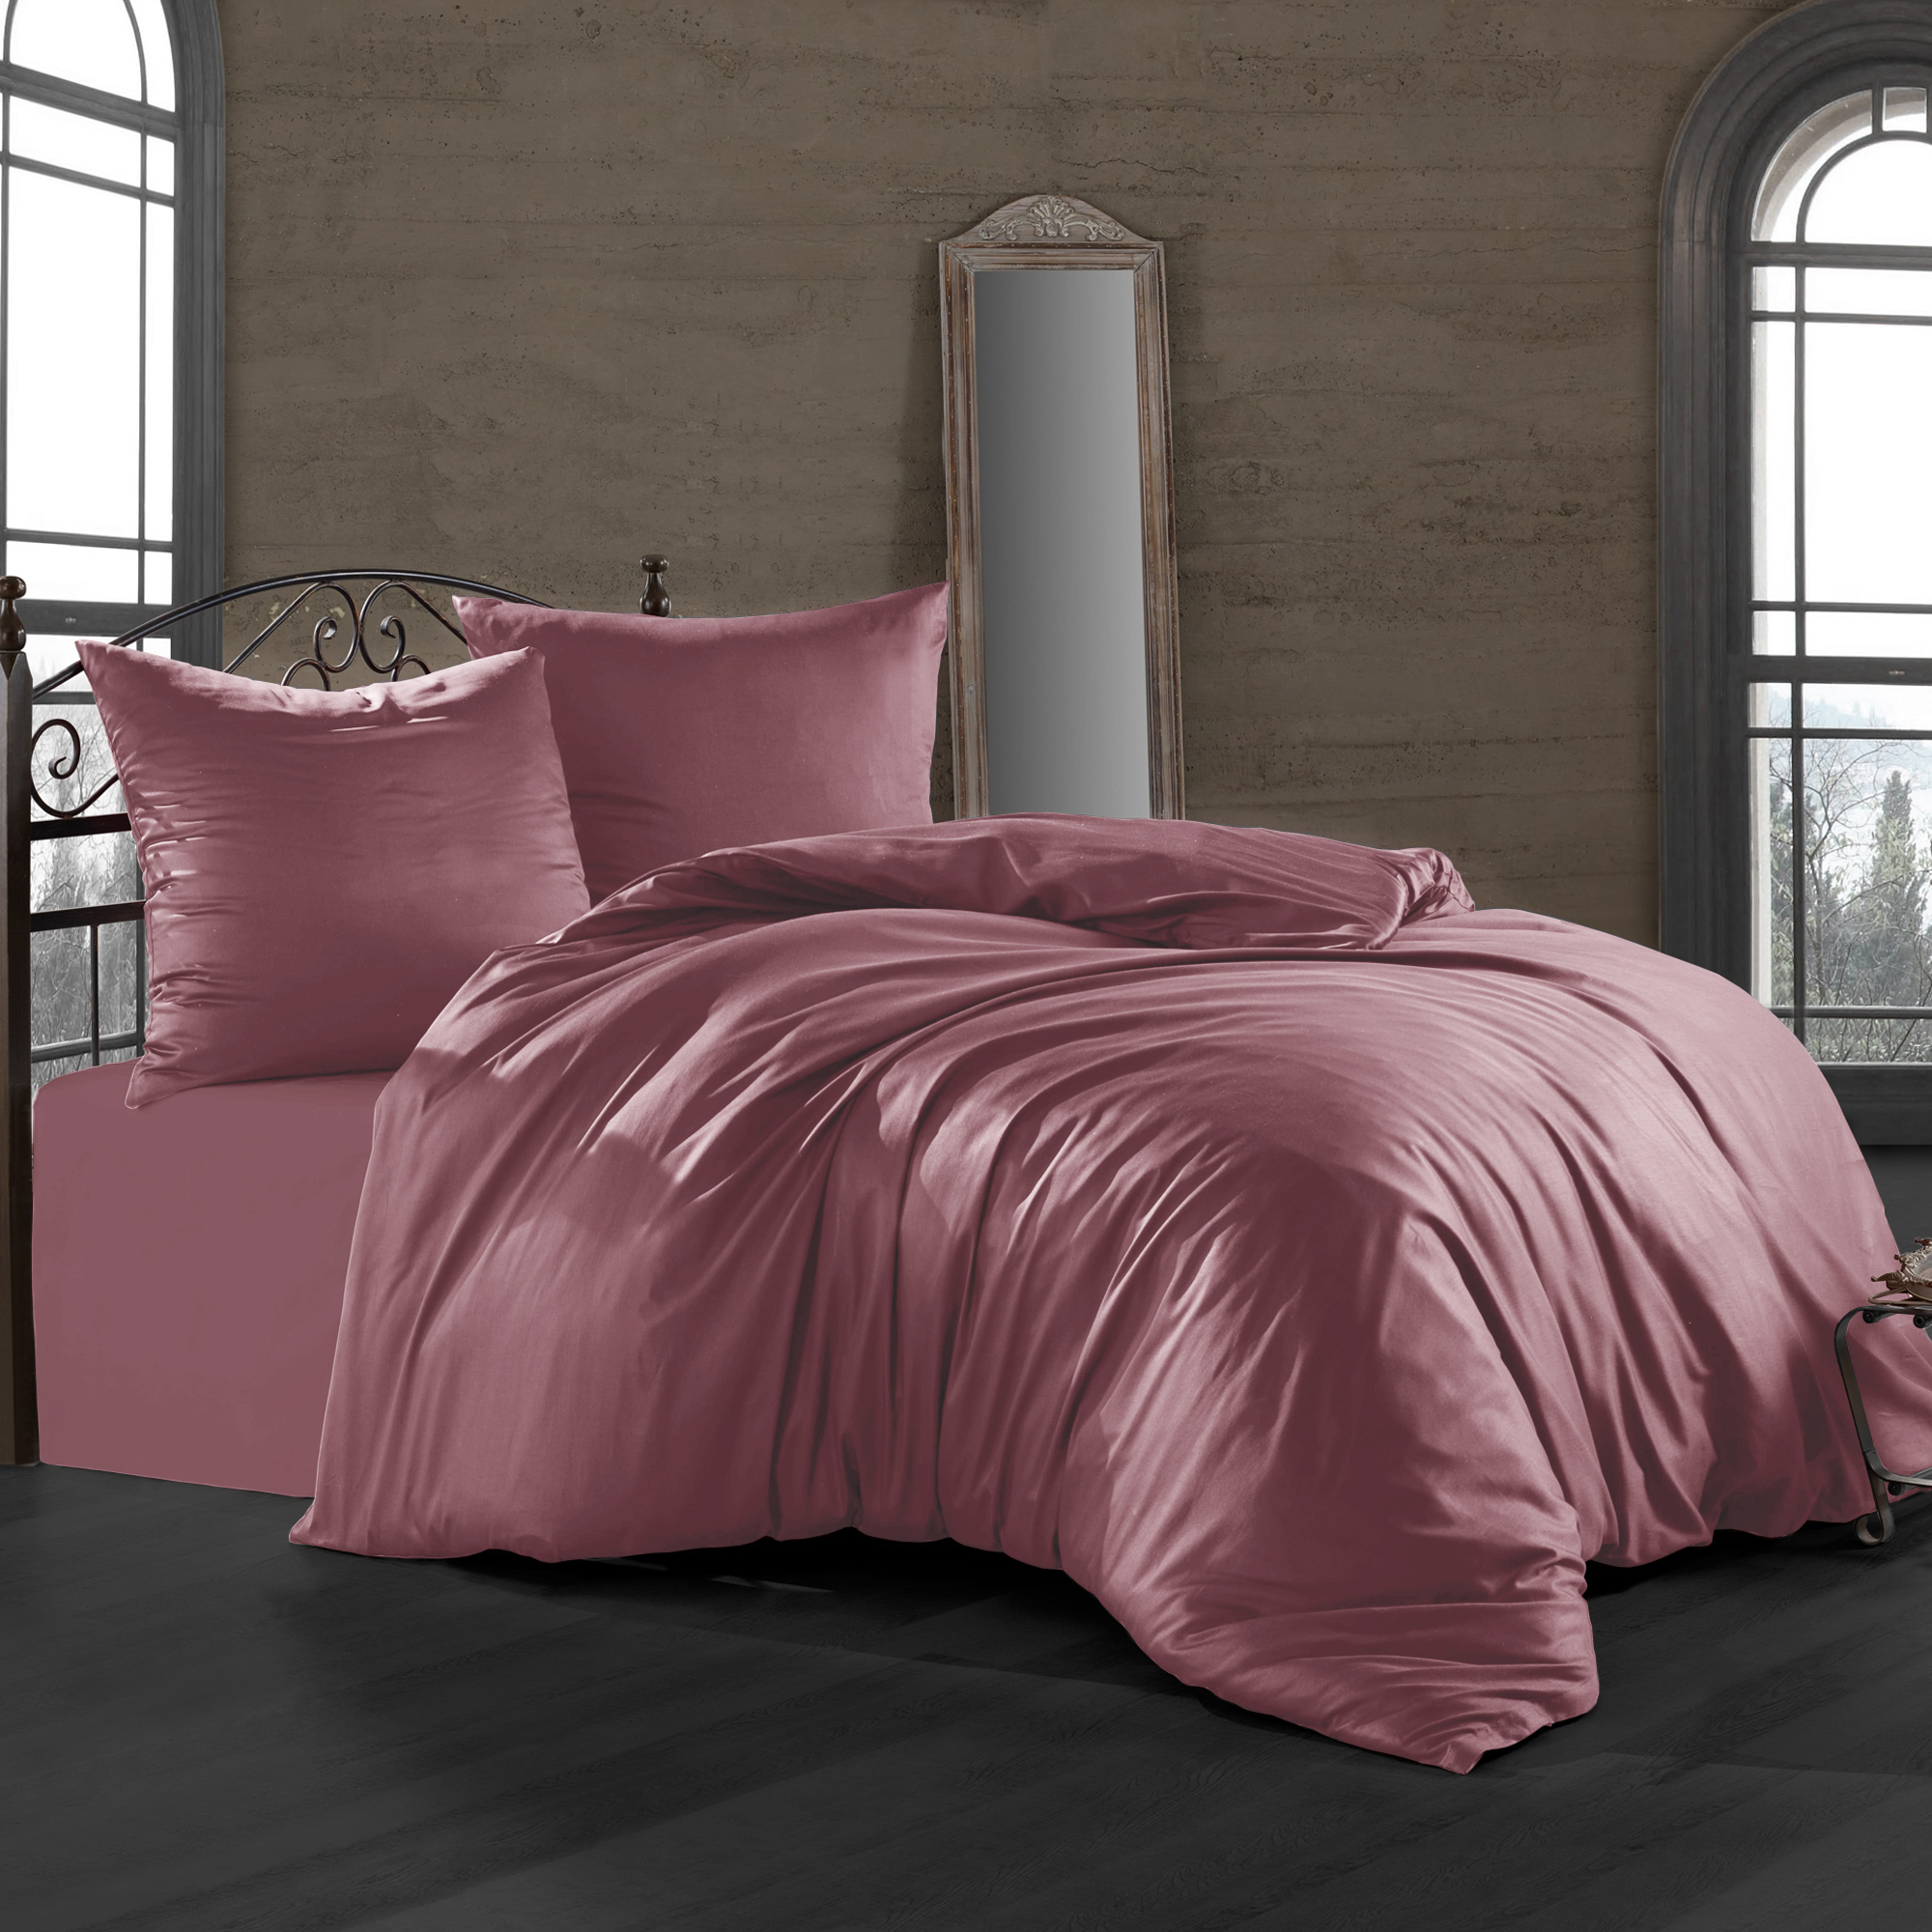 Комплект постельного белья Bahar пепельно-розовый Семейный/дуэт комплект постельного белья bahar blossom разно ный семейный